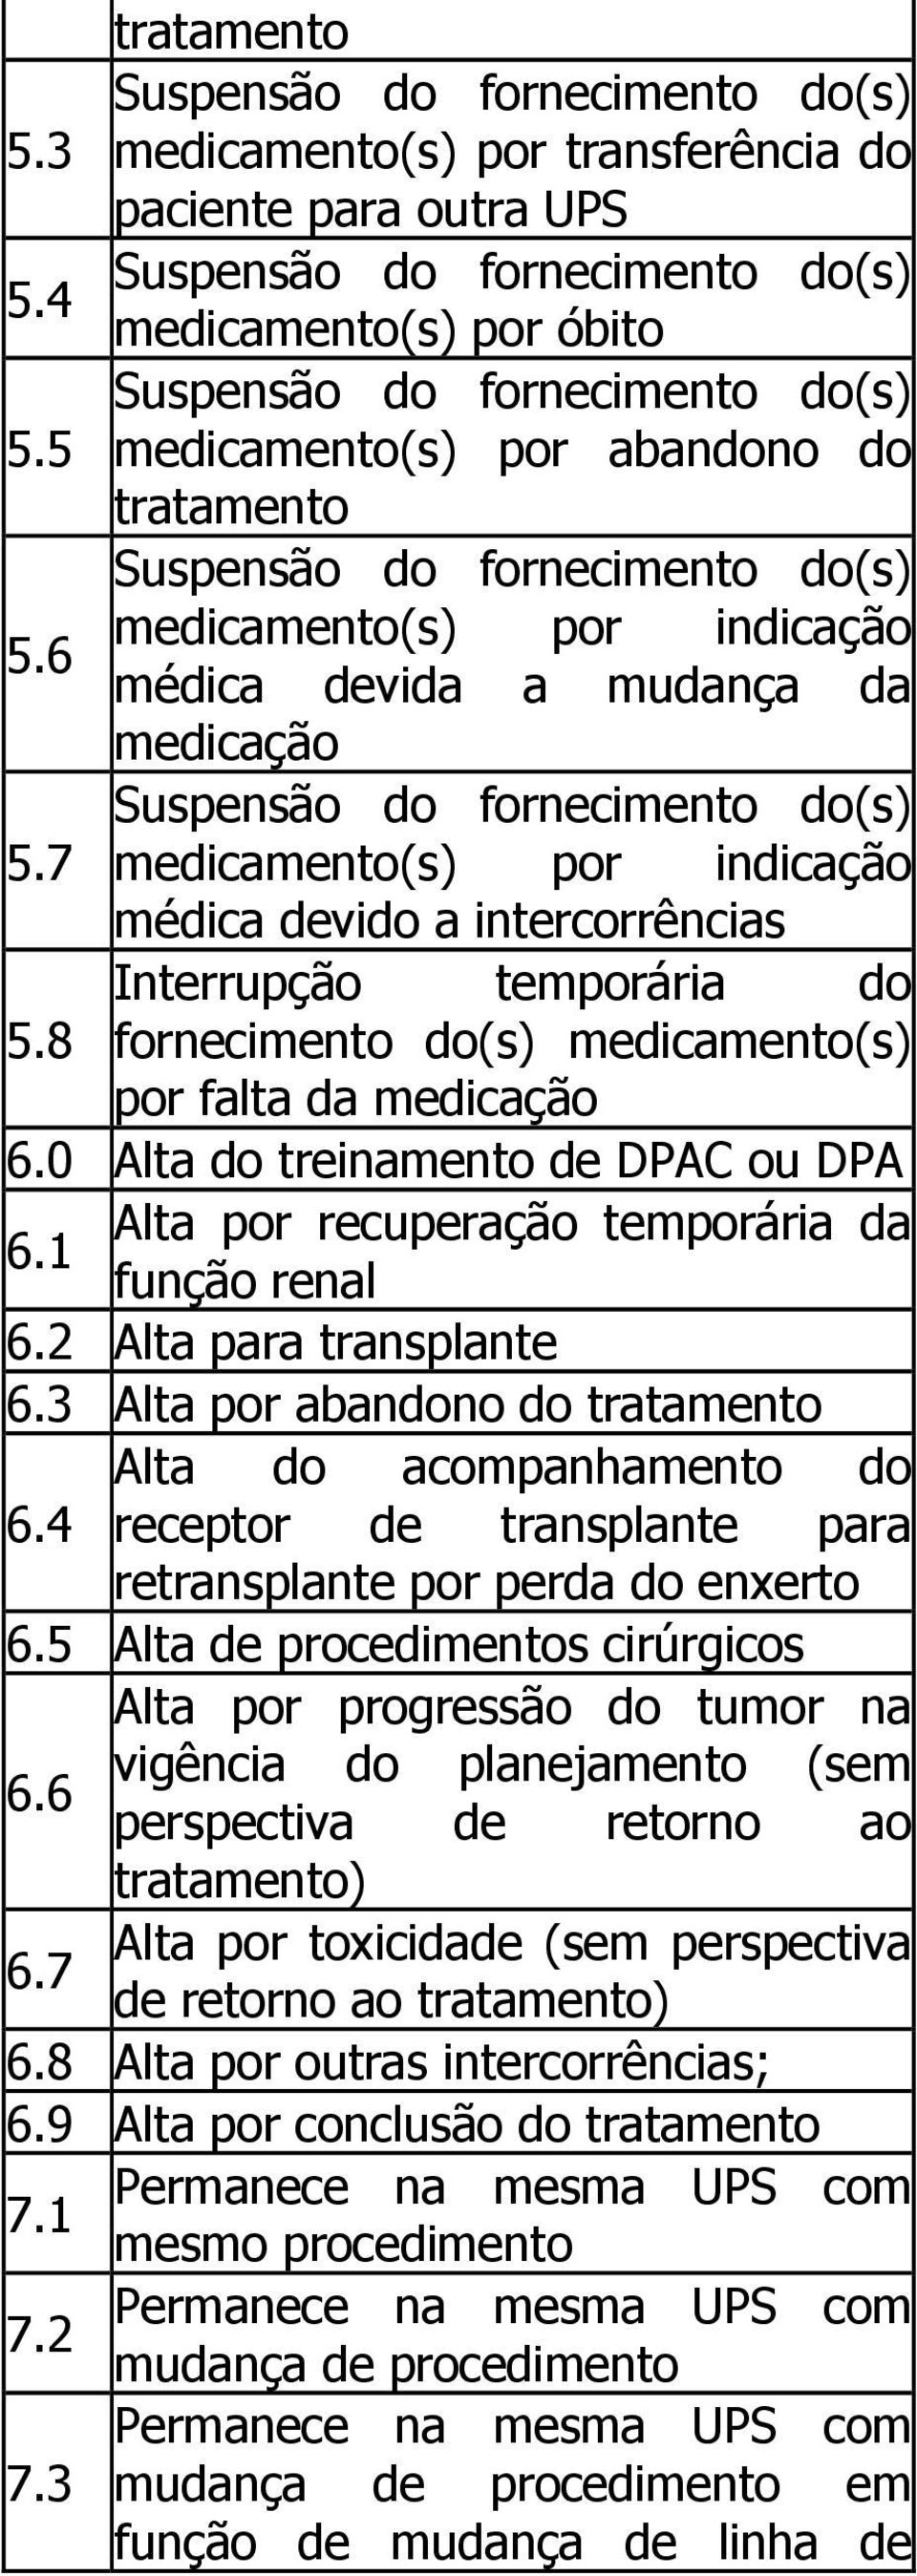 0 Alta do treinamento de DPAC ou DPA Alta por recuperação temporária da 6.1 função renal 6.2 Alta para transplante 6.3 Alta por abandono do tratamento Alta do acompanhamento do 6.